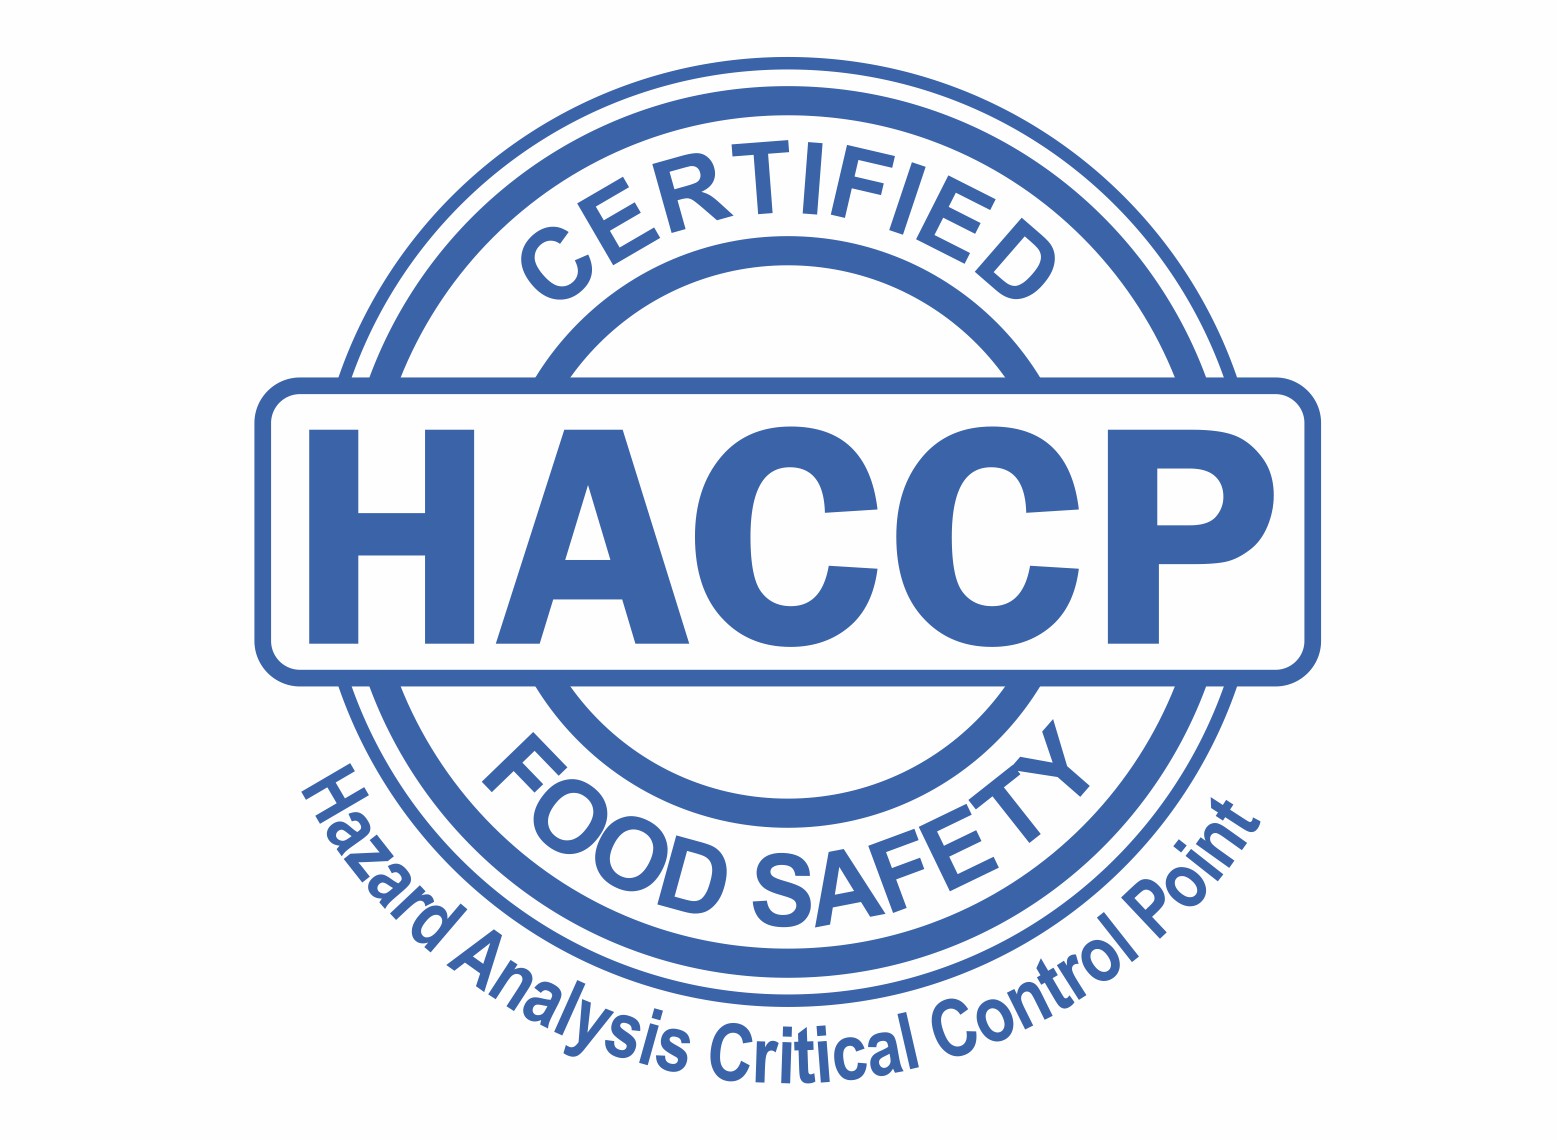 HACCP Adalah Pengertian, Tujuan, Jenis Bahaya dan Prinsip